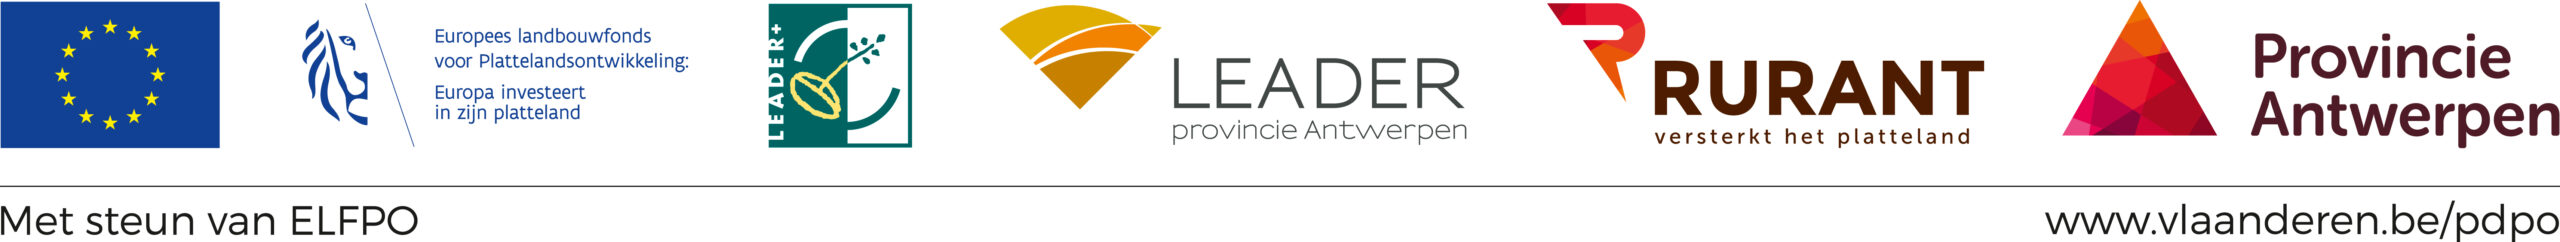 RURANT_logo-banner-leader_2020